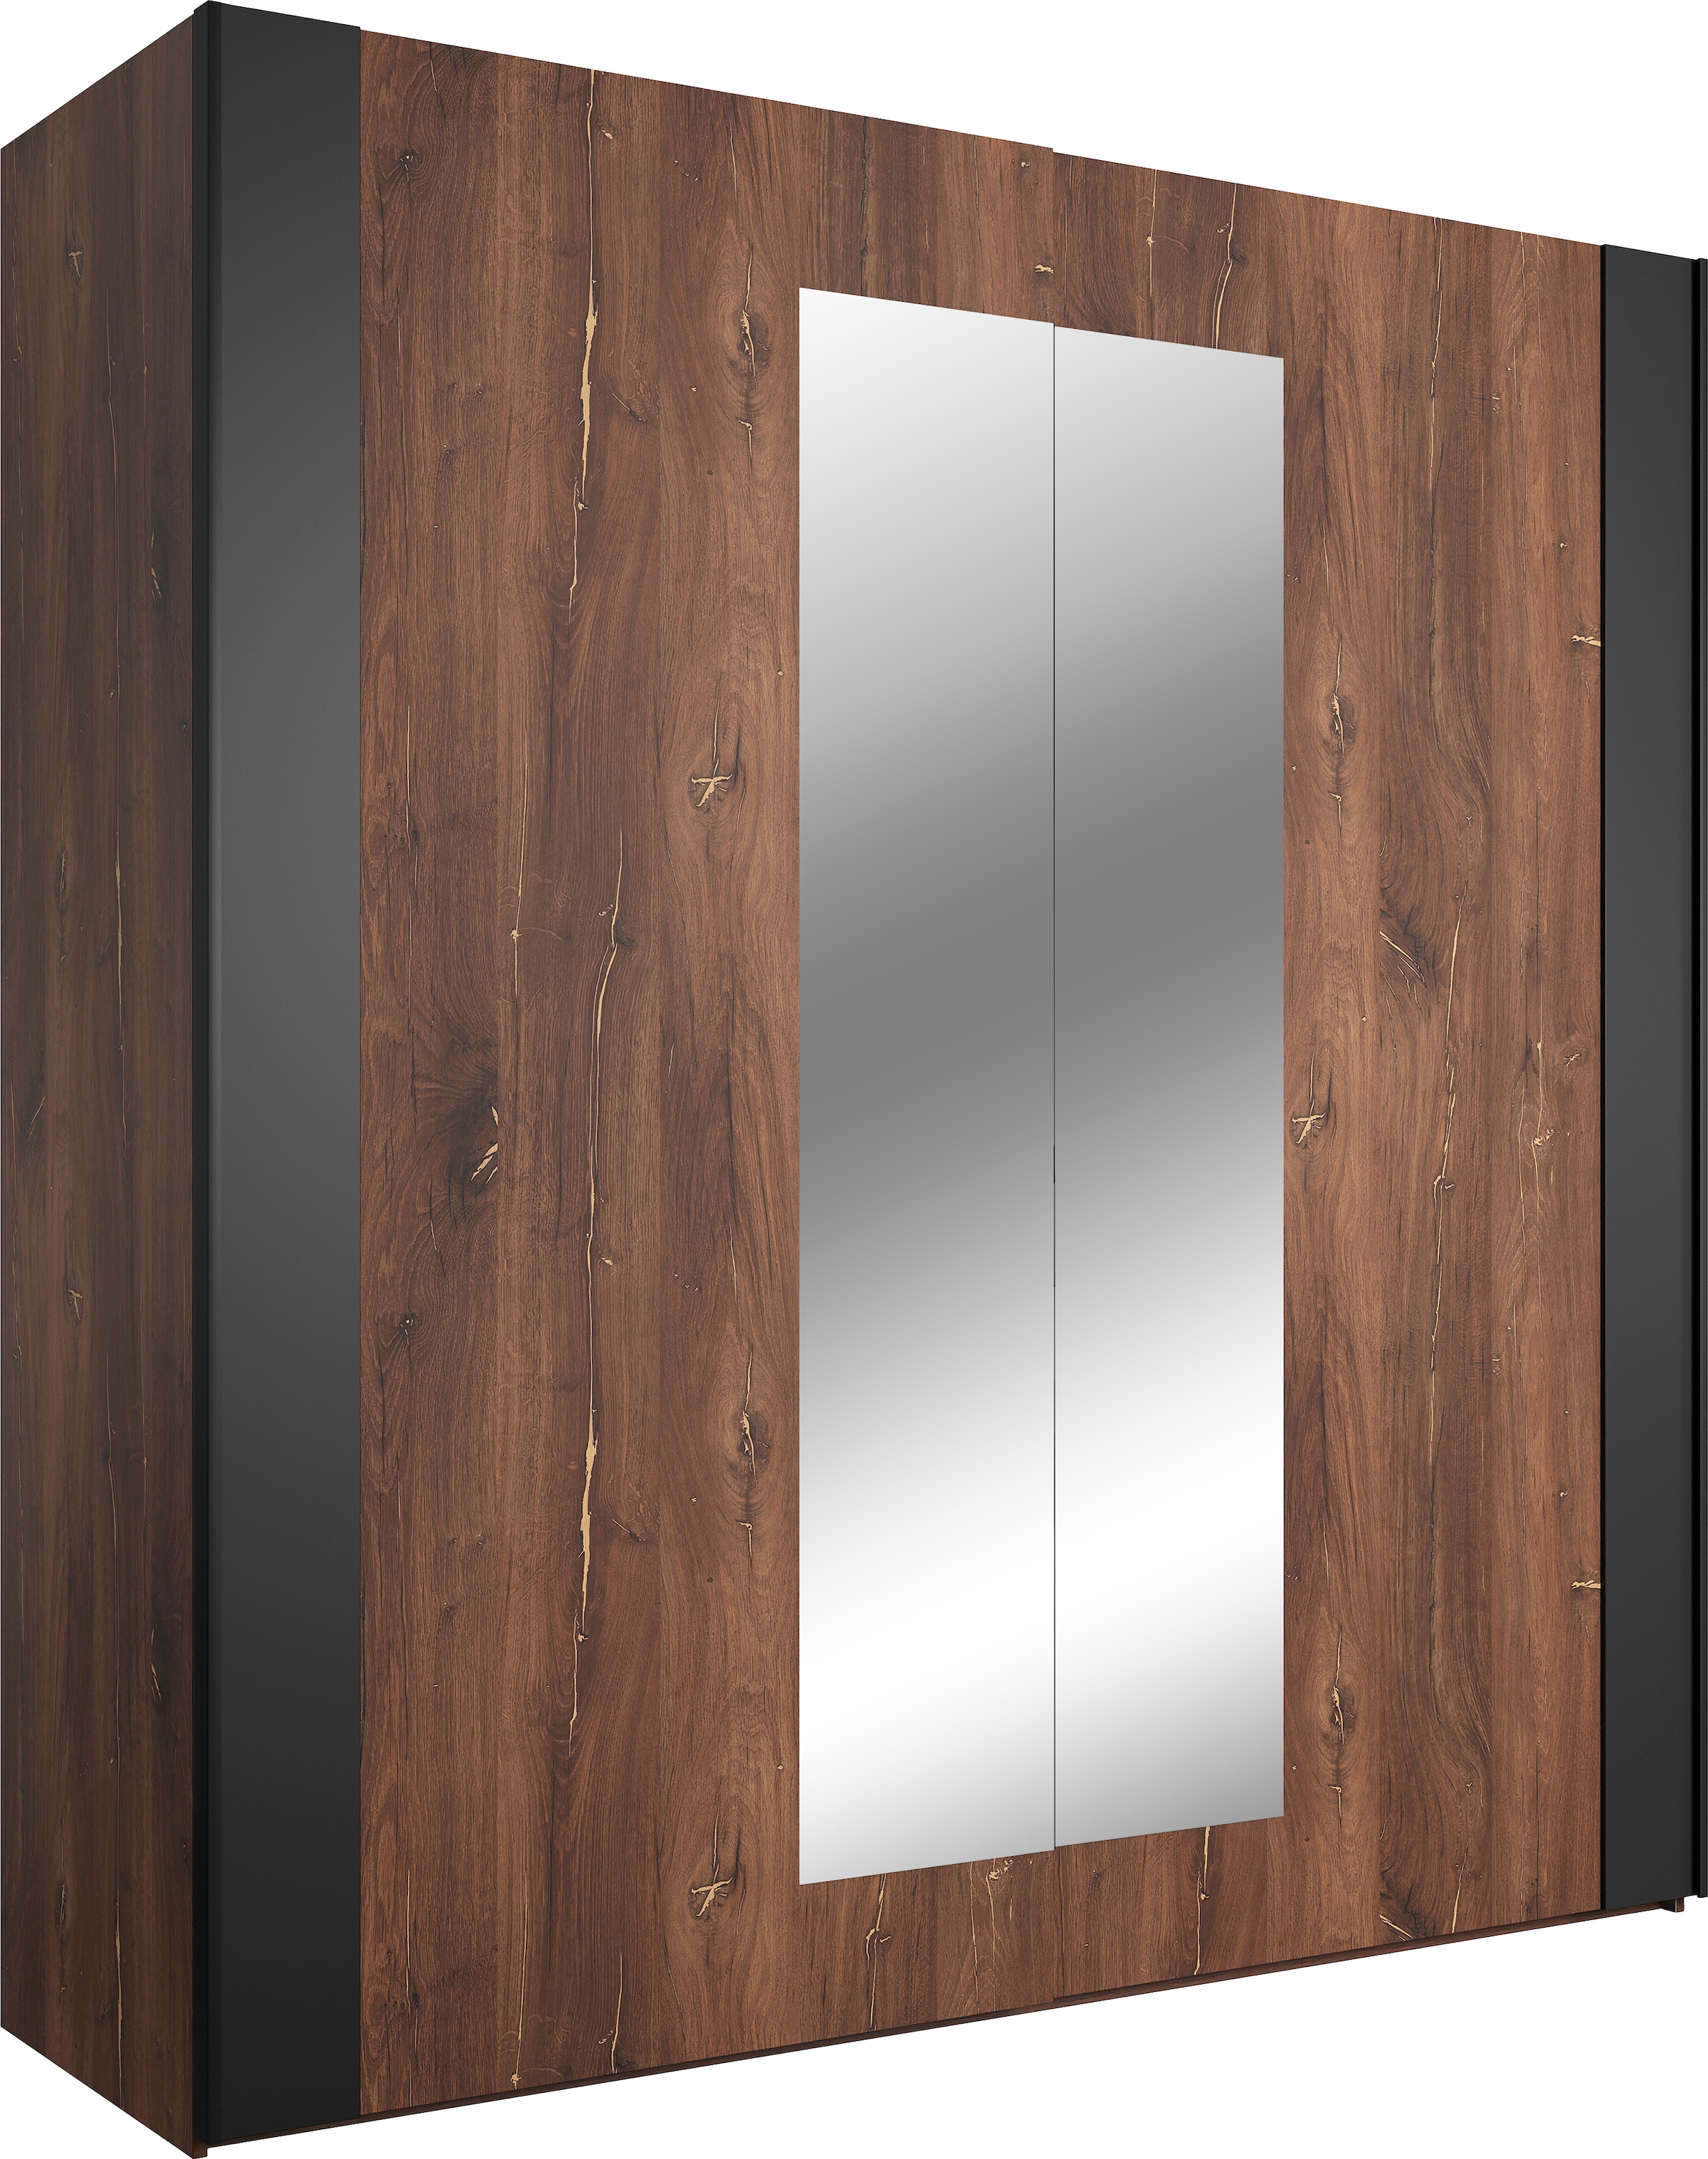 Helvetia Schwebetürenschrank »Sigma«, mit Spiegelflächen beiden Türen kaufen jetzt auf